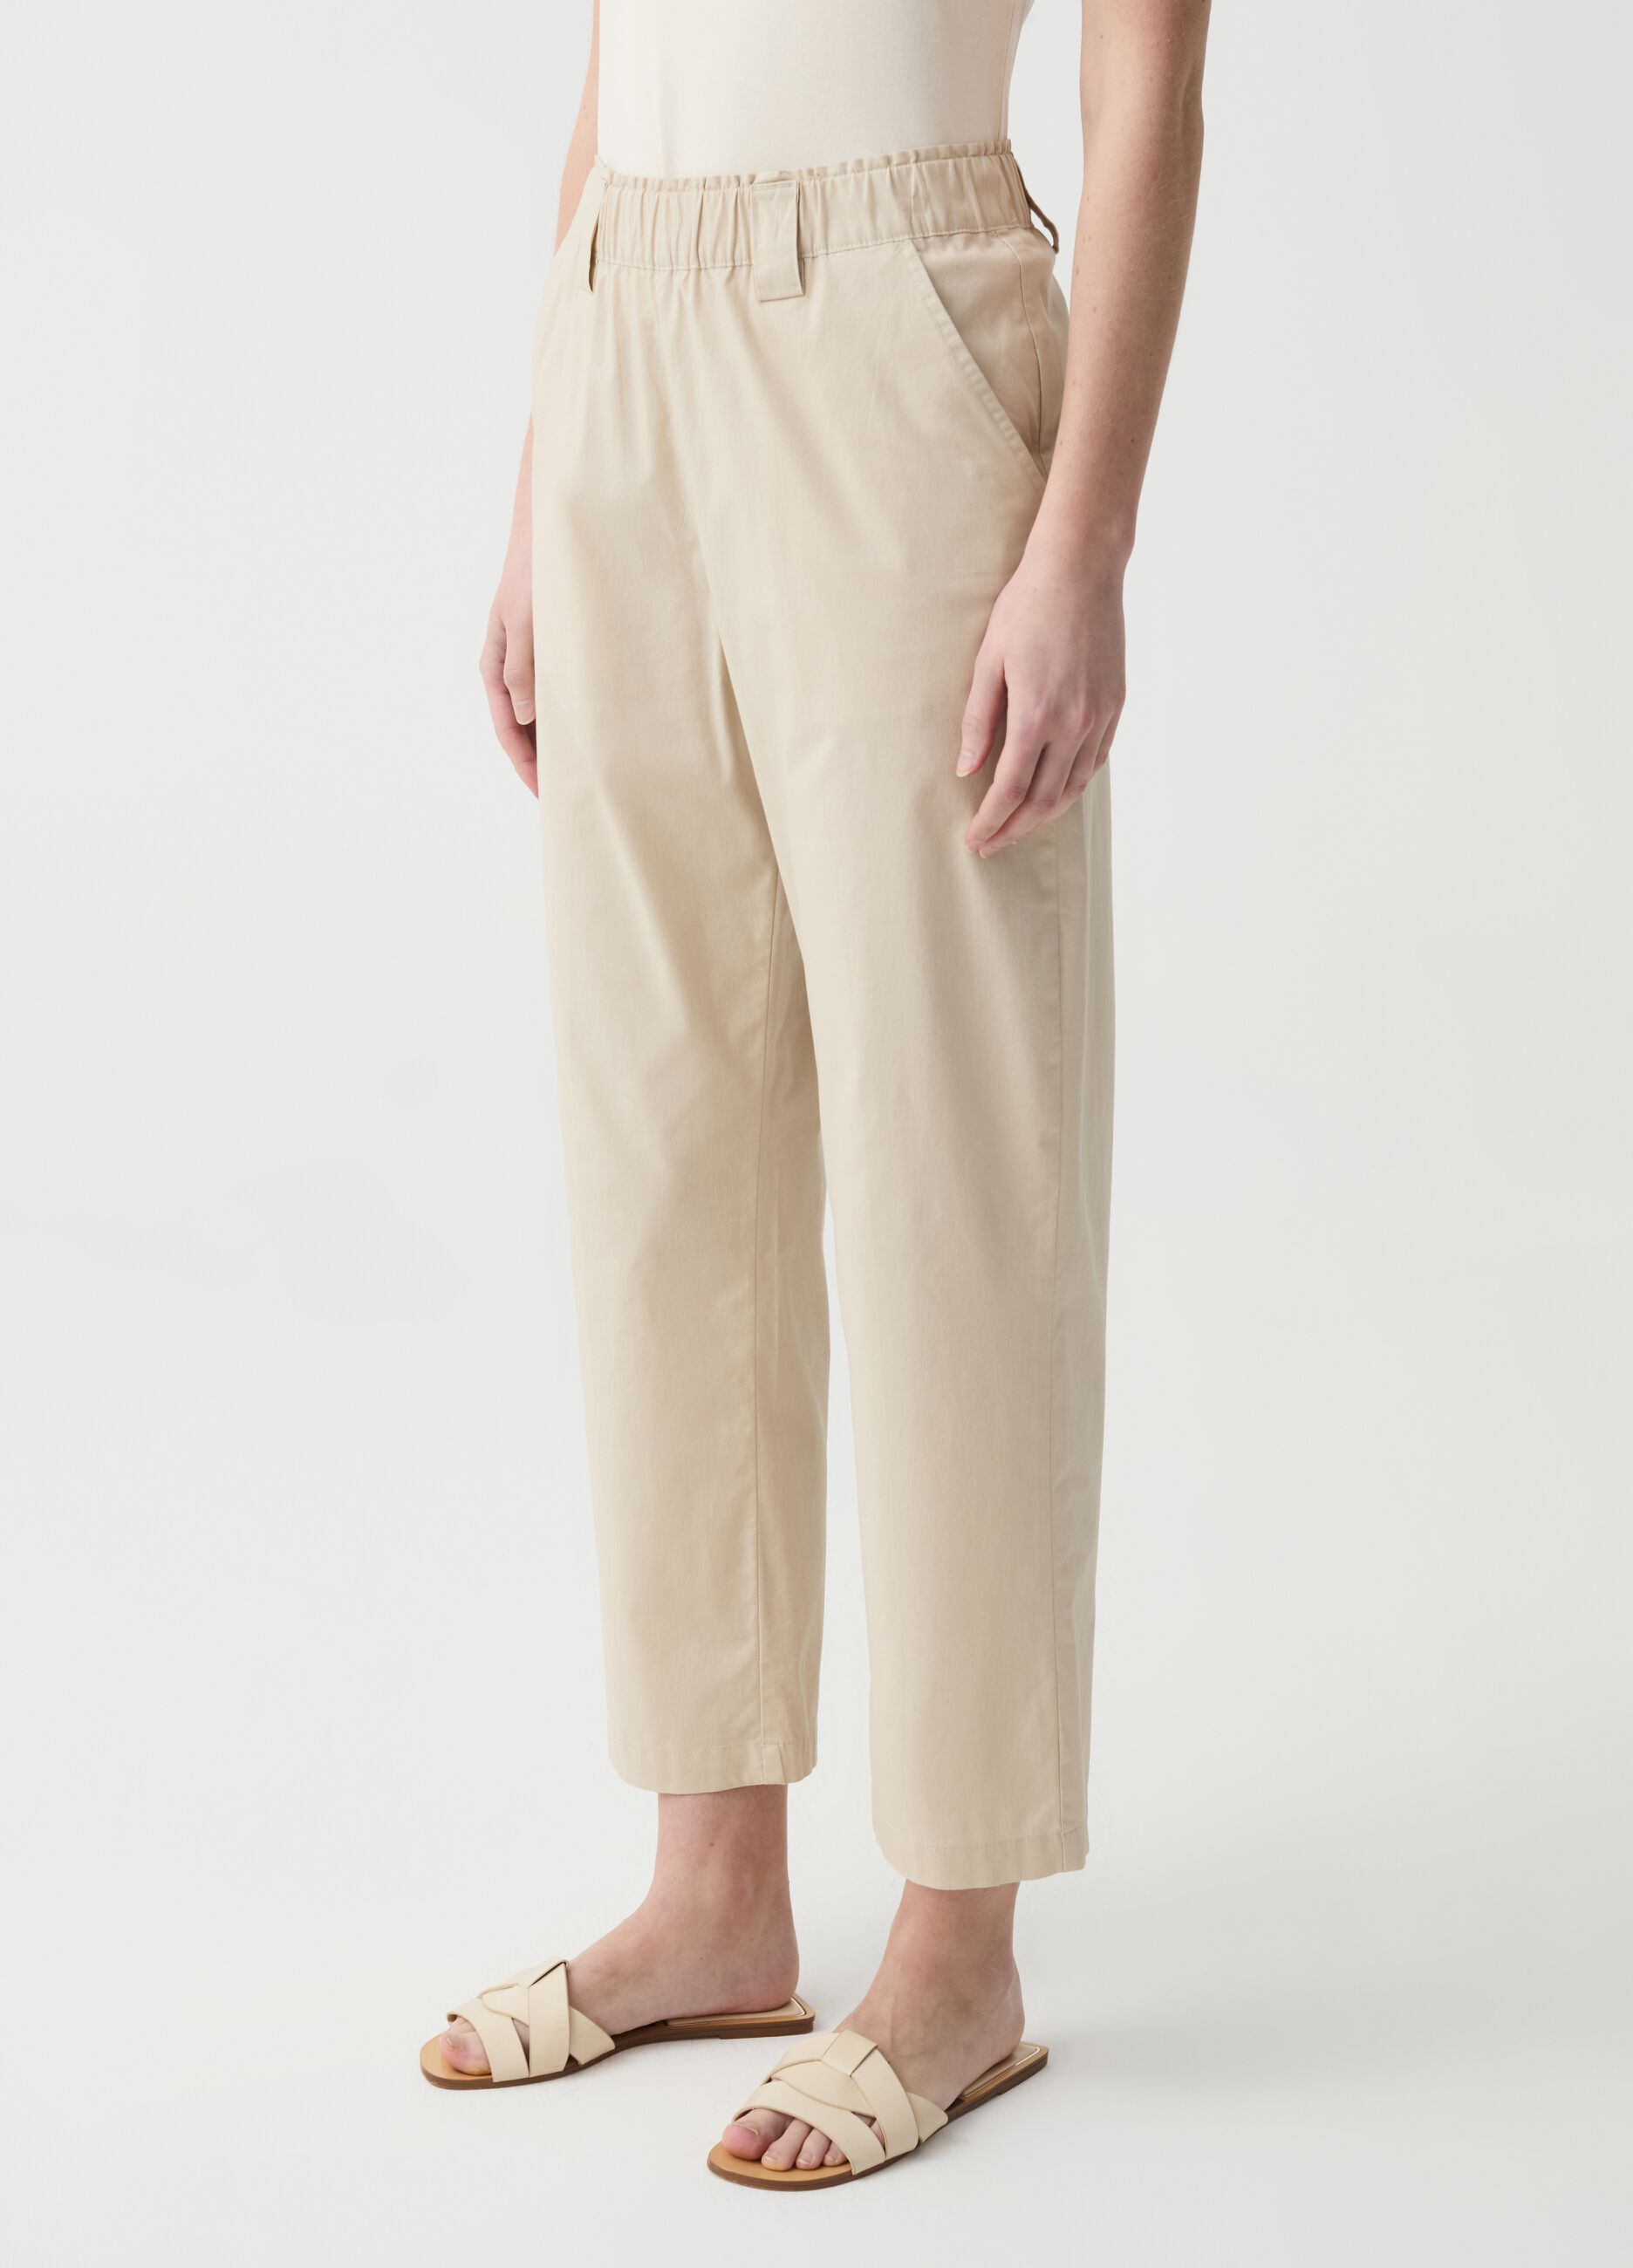 Pantalone crop wide leg in cotone stretch